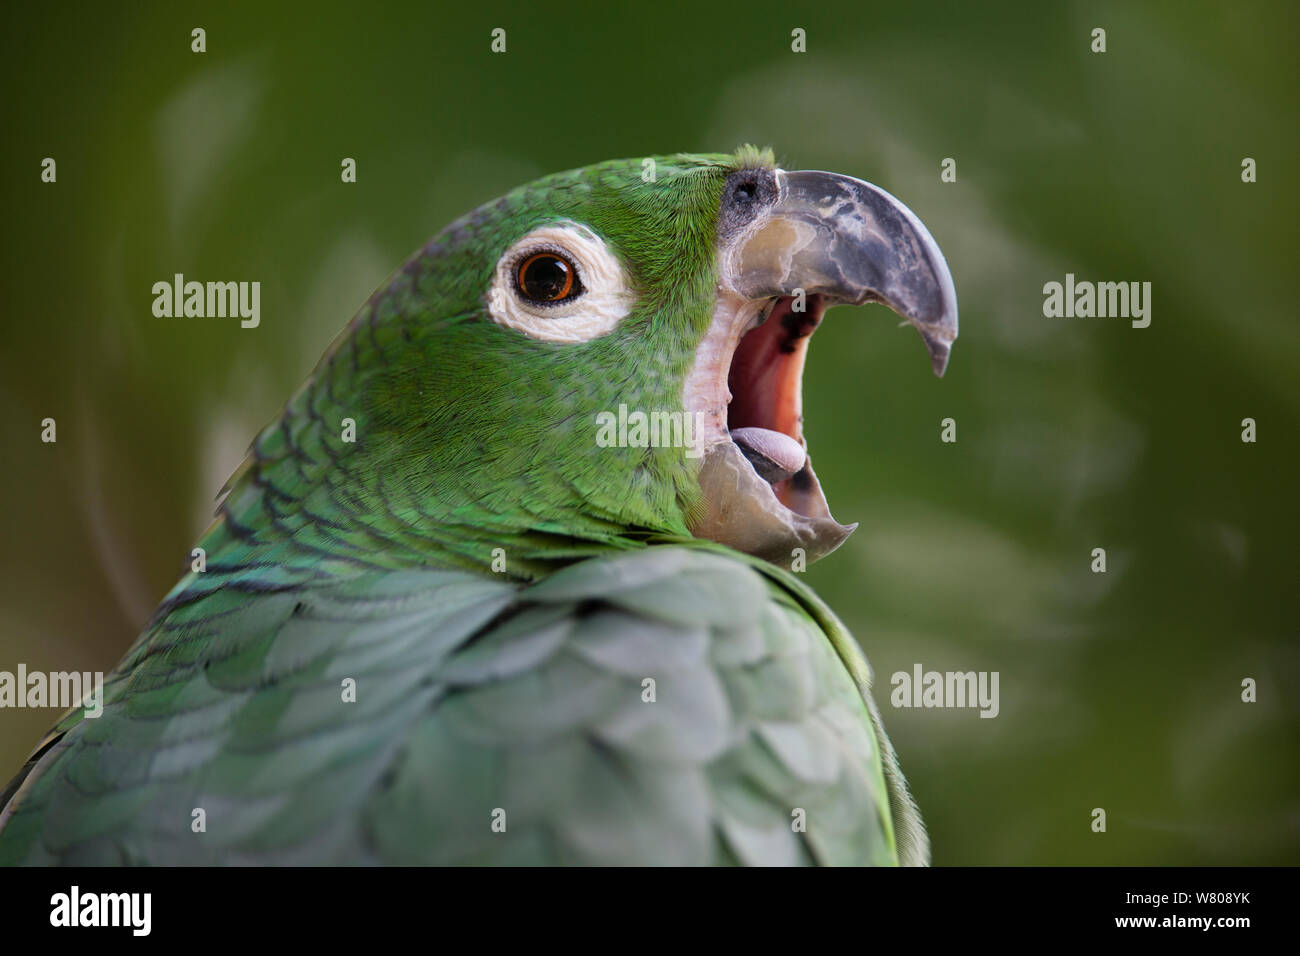 Mealy amazon parrot (Amazona farinosa) yawning, Amazon, Peru. Stock Photo